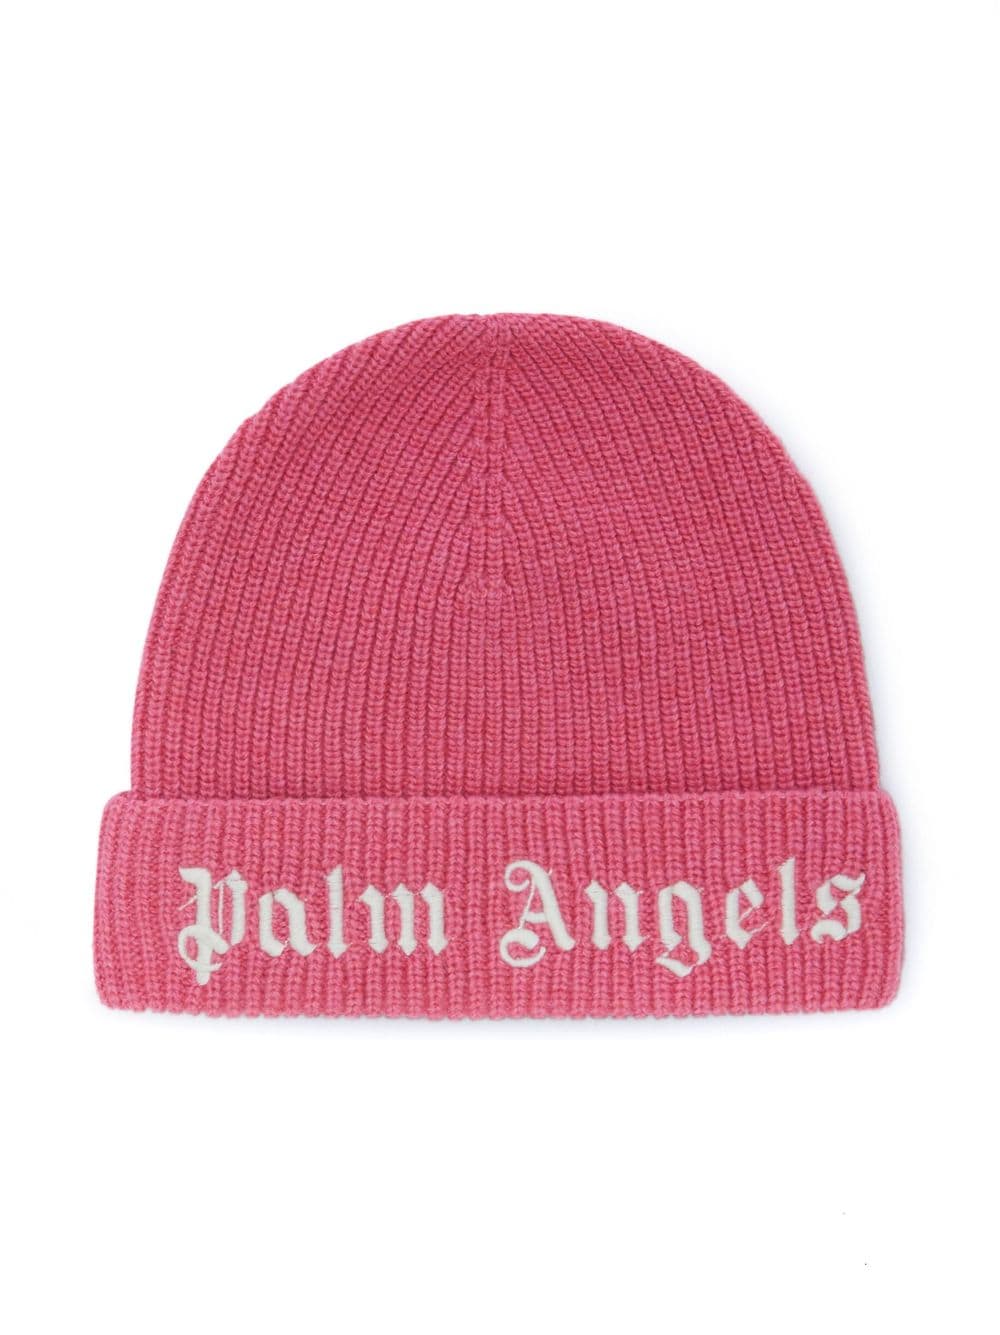 Cappello rosa bambina con logo bianco ricamato